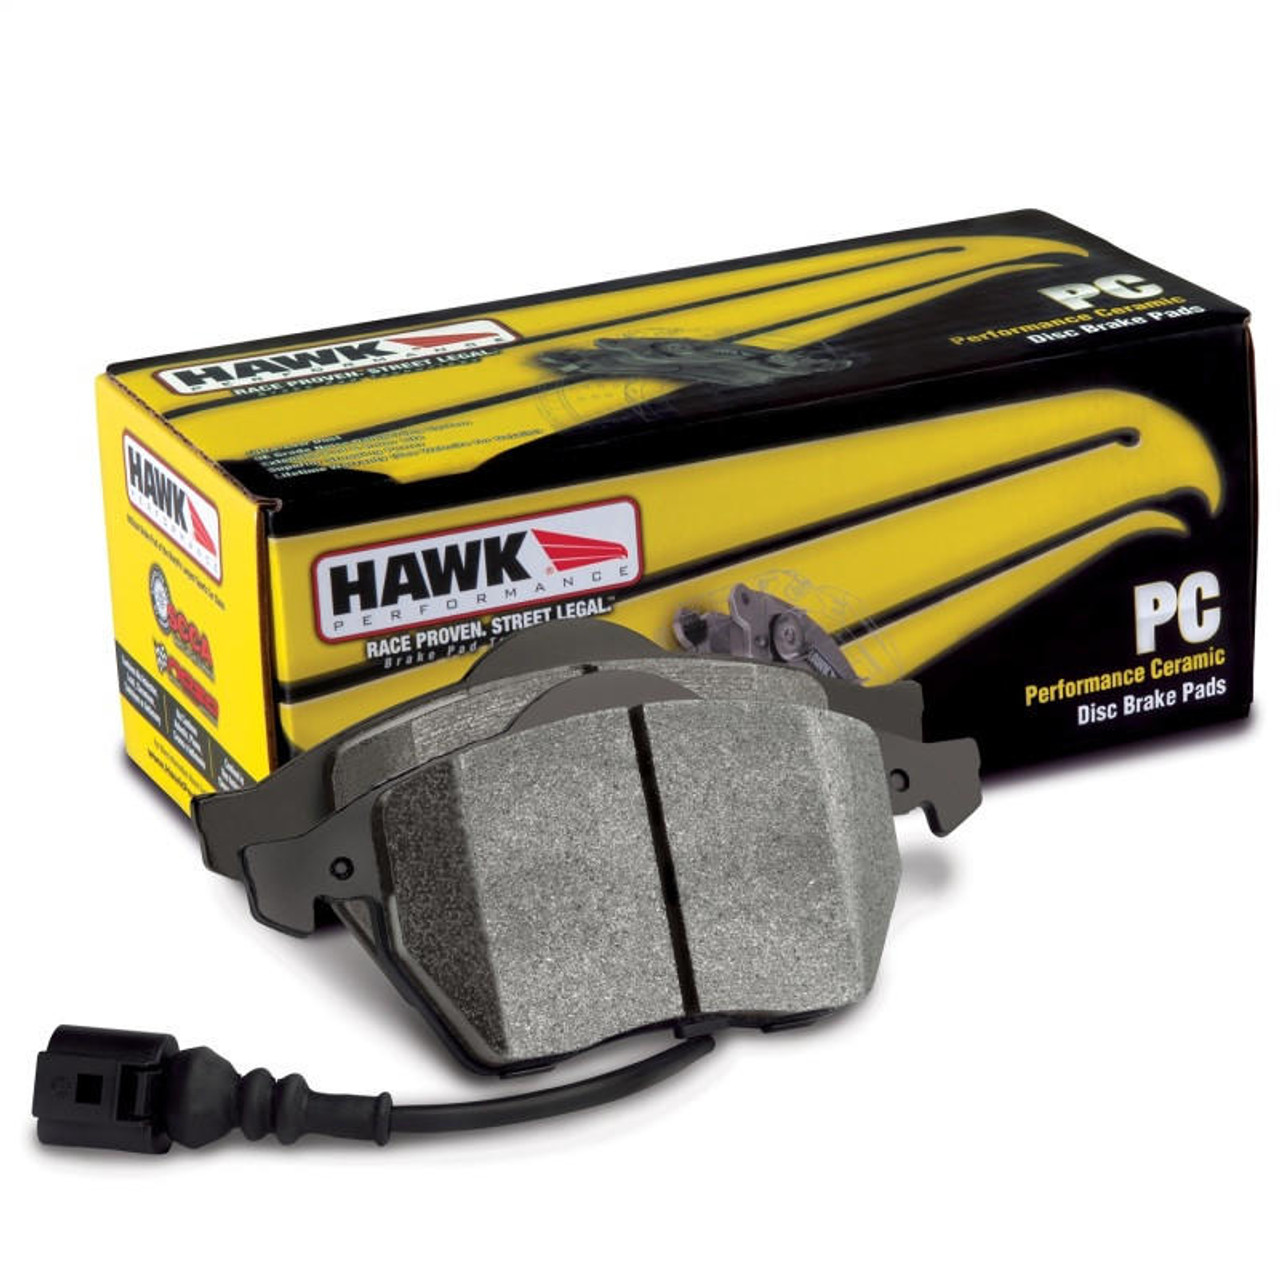 Hawk Performance Hawk 01-06 BMW 330Ci / 01-05 330i/330Xi / 03-06 M3 Performance Ceramic Street Front Brake Pads - HB464Z.764 